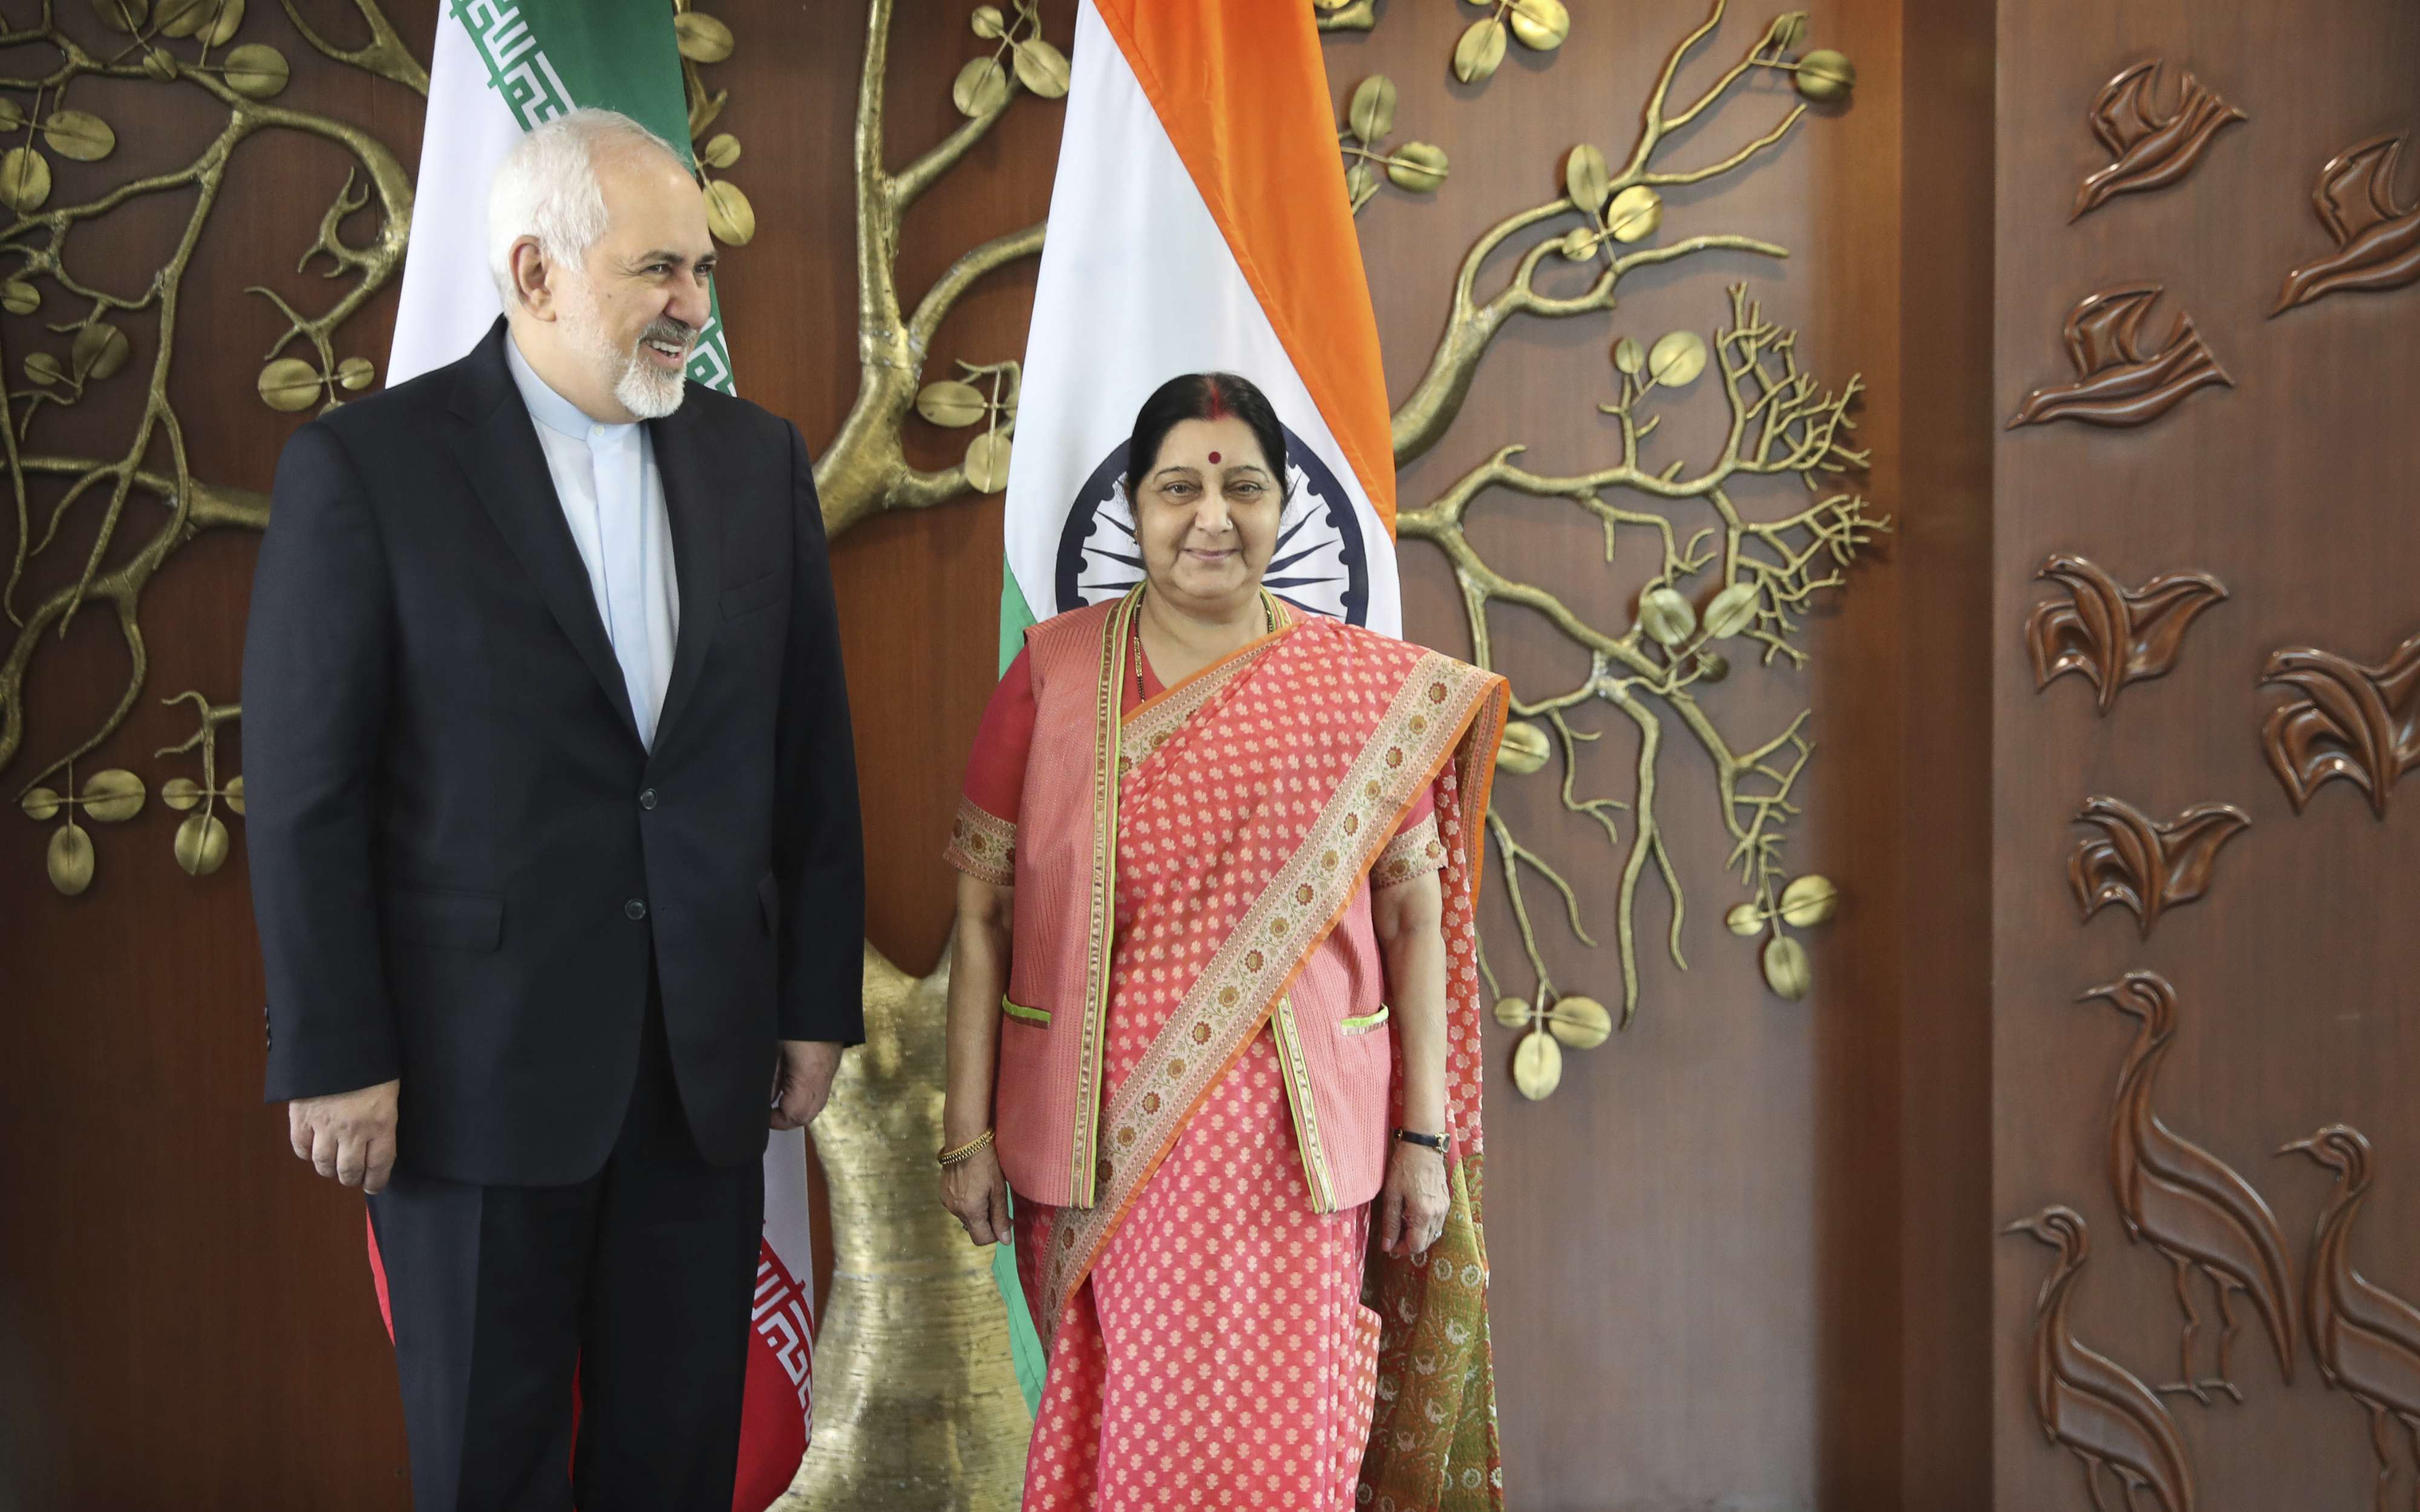 وزير الخارجية الايراني محمد جواد ظريف يلتقي وزيرة خارجية الهند سوشما سواراج